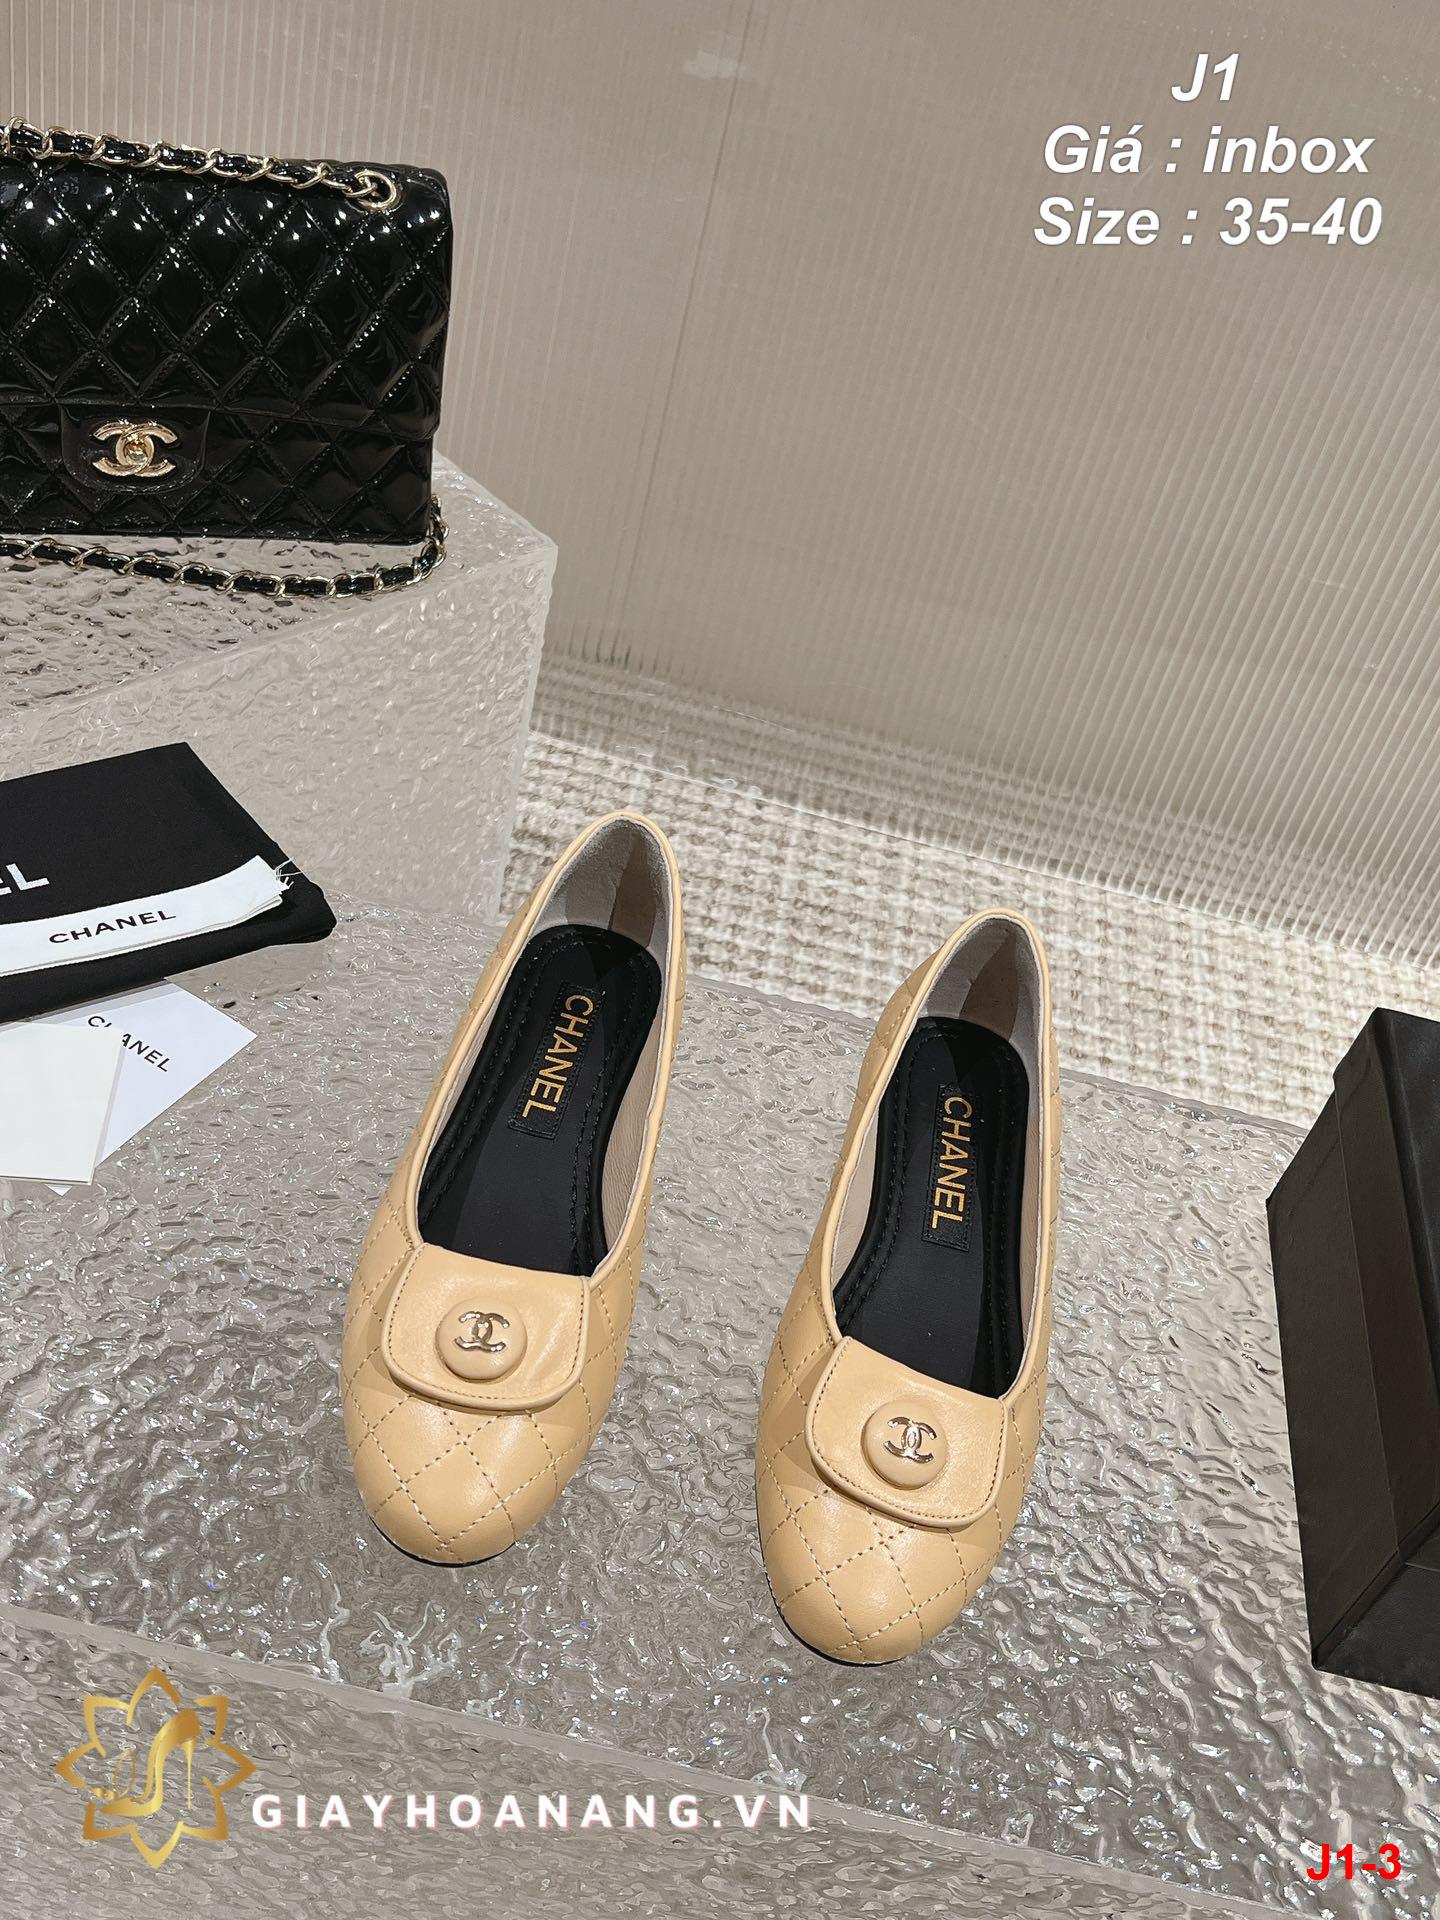 J1-3 Chanel giày bệt siêu cấp